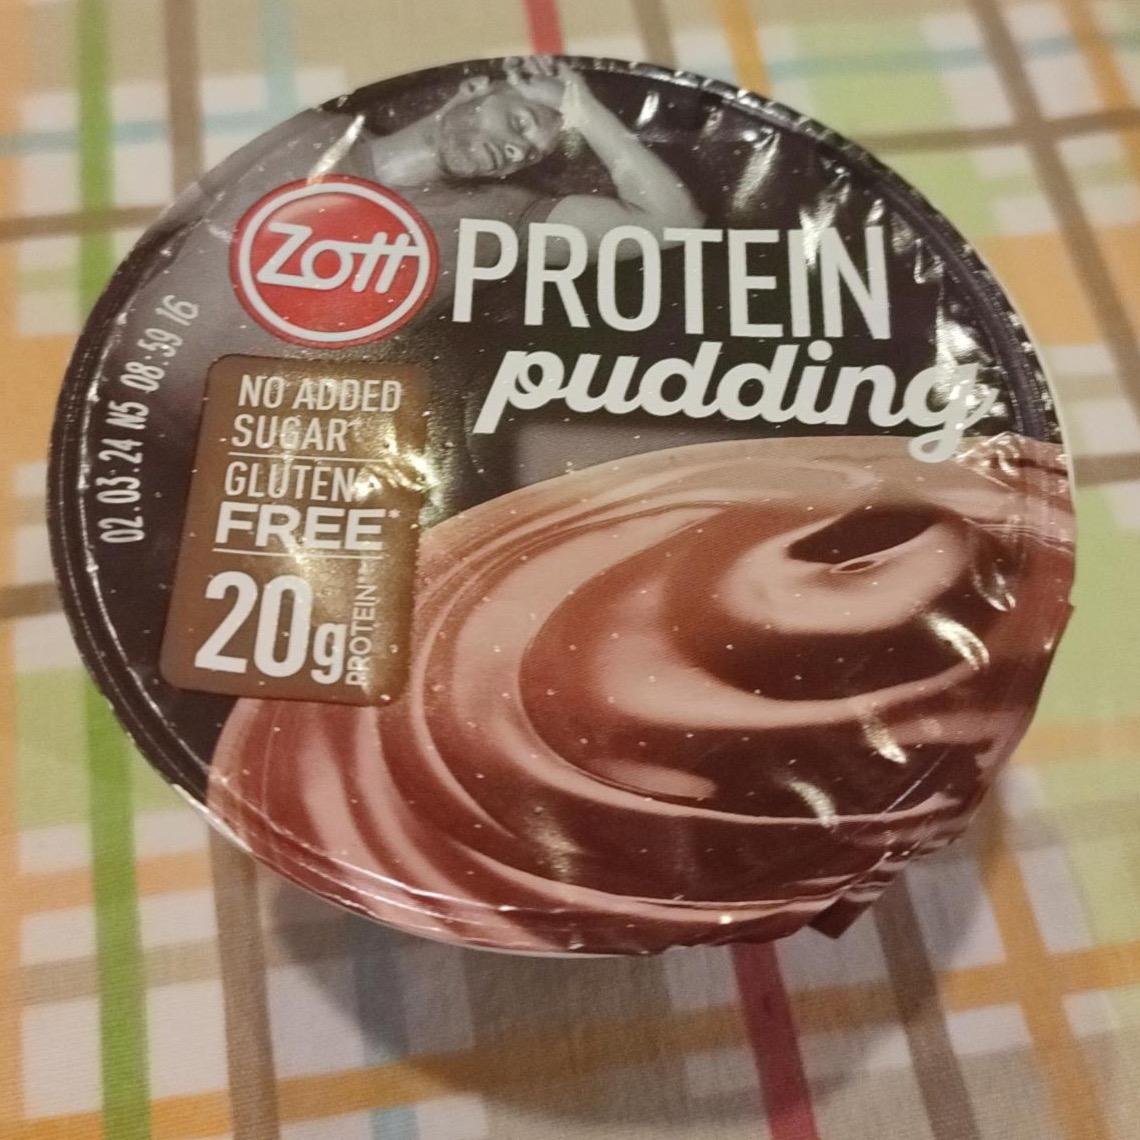 Képek - Protein pudding csokis Zott